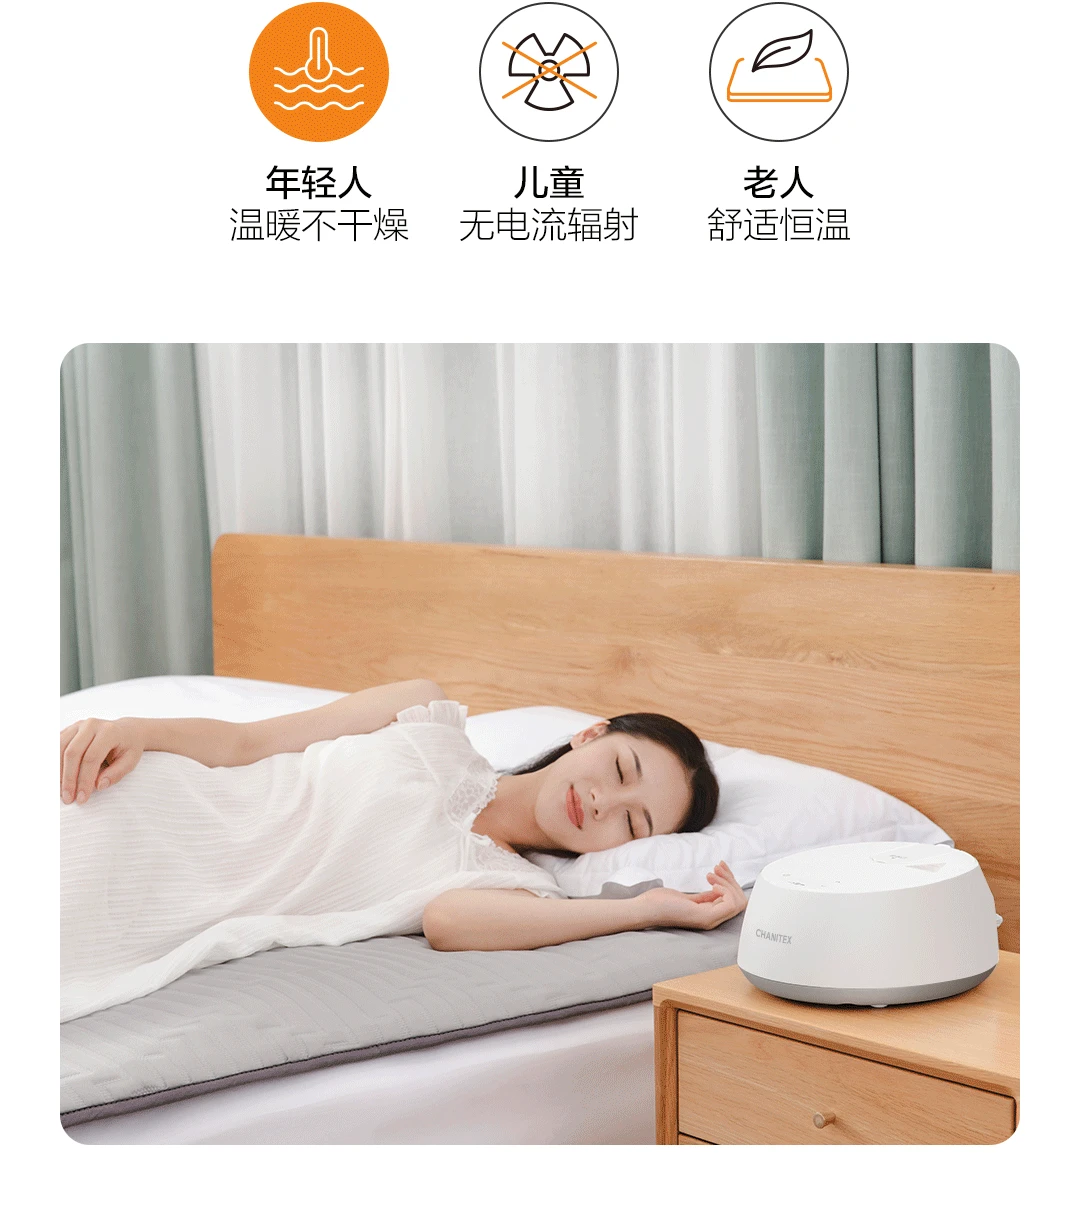 Xiaomi Mijia Jianit Интеллектуальный водопроводный матрас с постоянной температурой Безопасный и бесрадиационный Mijia App контроль